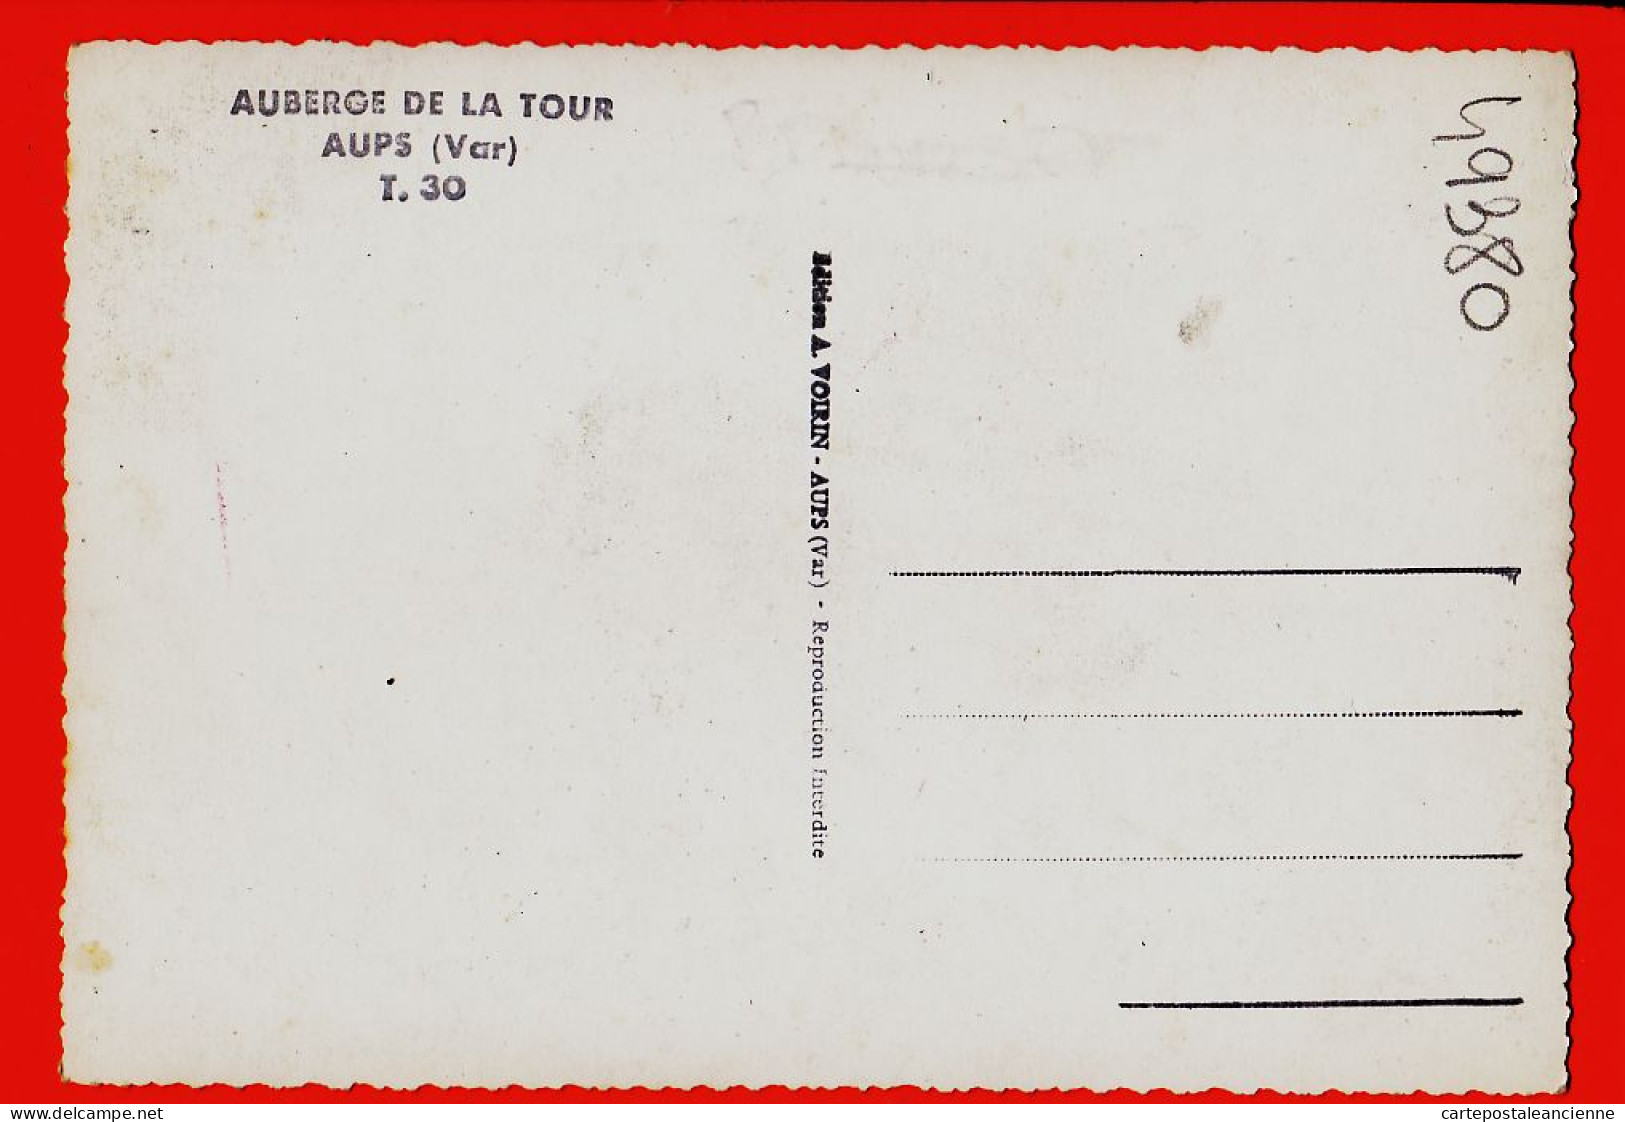 22441 / ⭐ ♥️ Peu Commun AUPS 83-Var Auberge LA TOUR Façade Côté Cour Intérieure 1950s Photo-Bromure VOIRIN T.30 - Aups